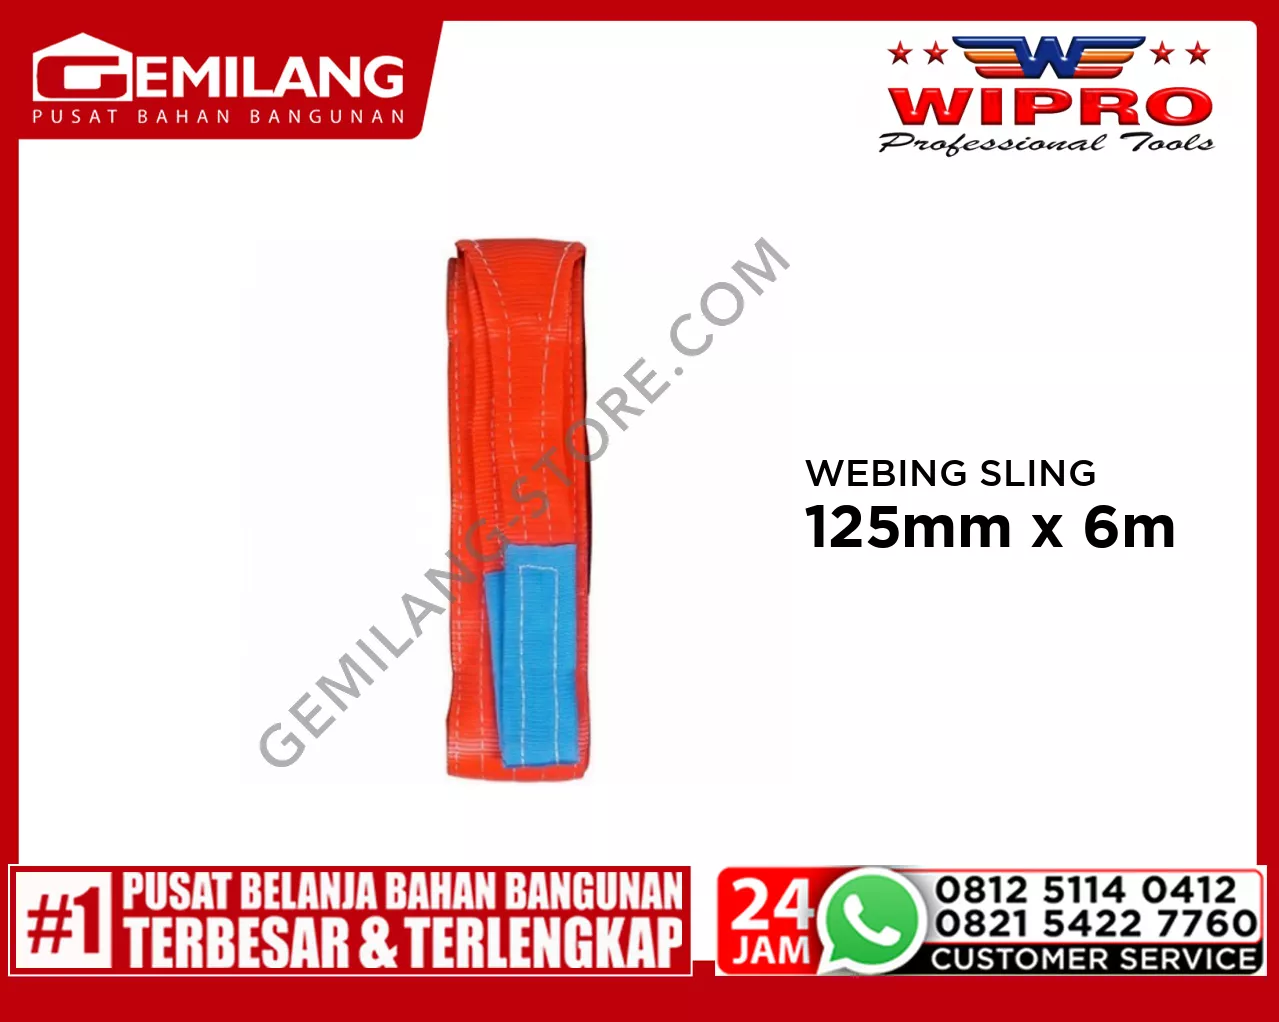 WIPRO WEBING SLING WLL 5T6 (MERAH) 125mm x 6m